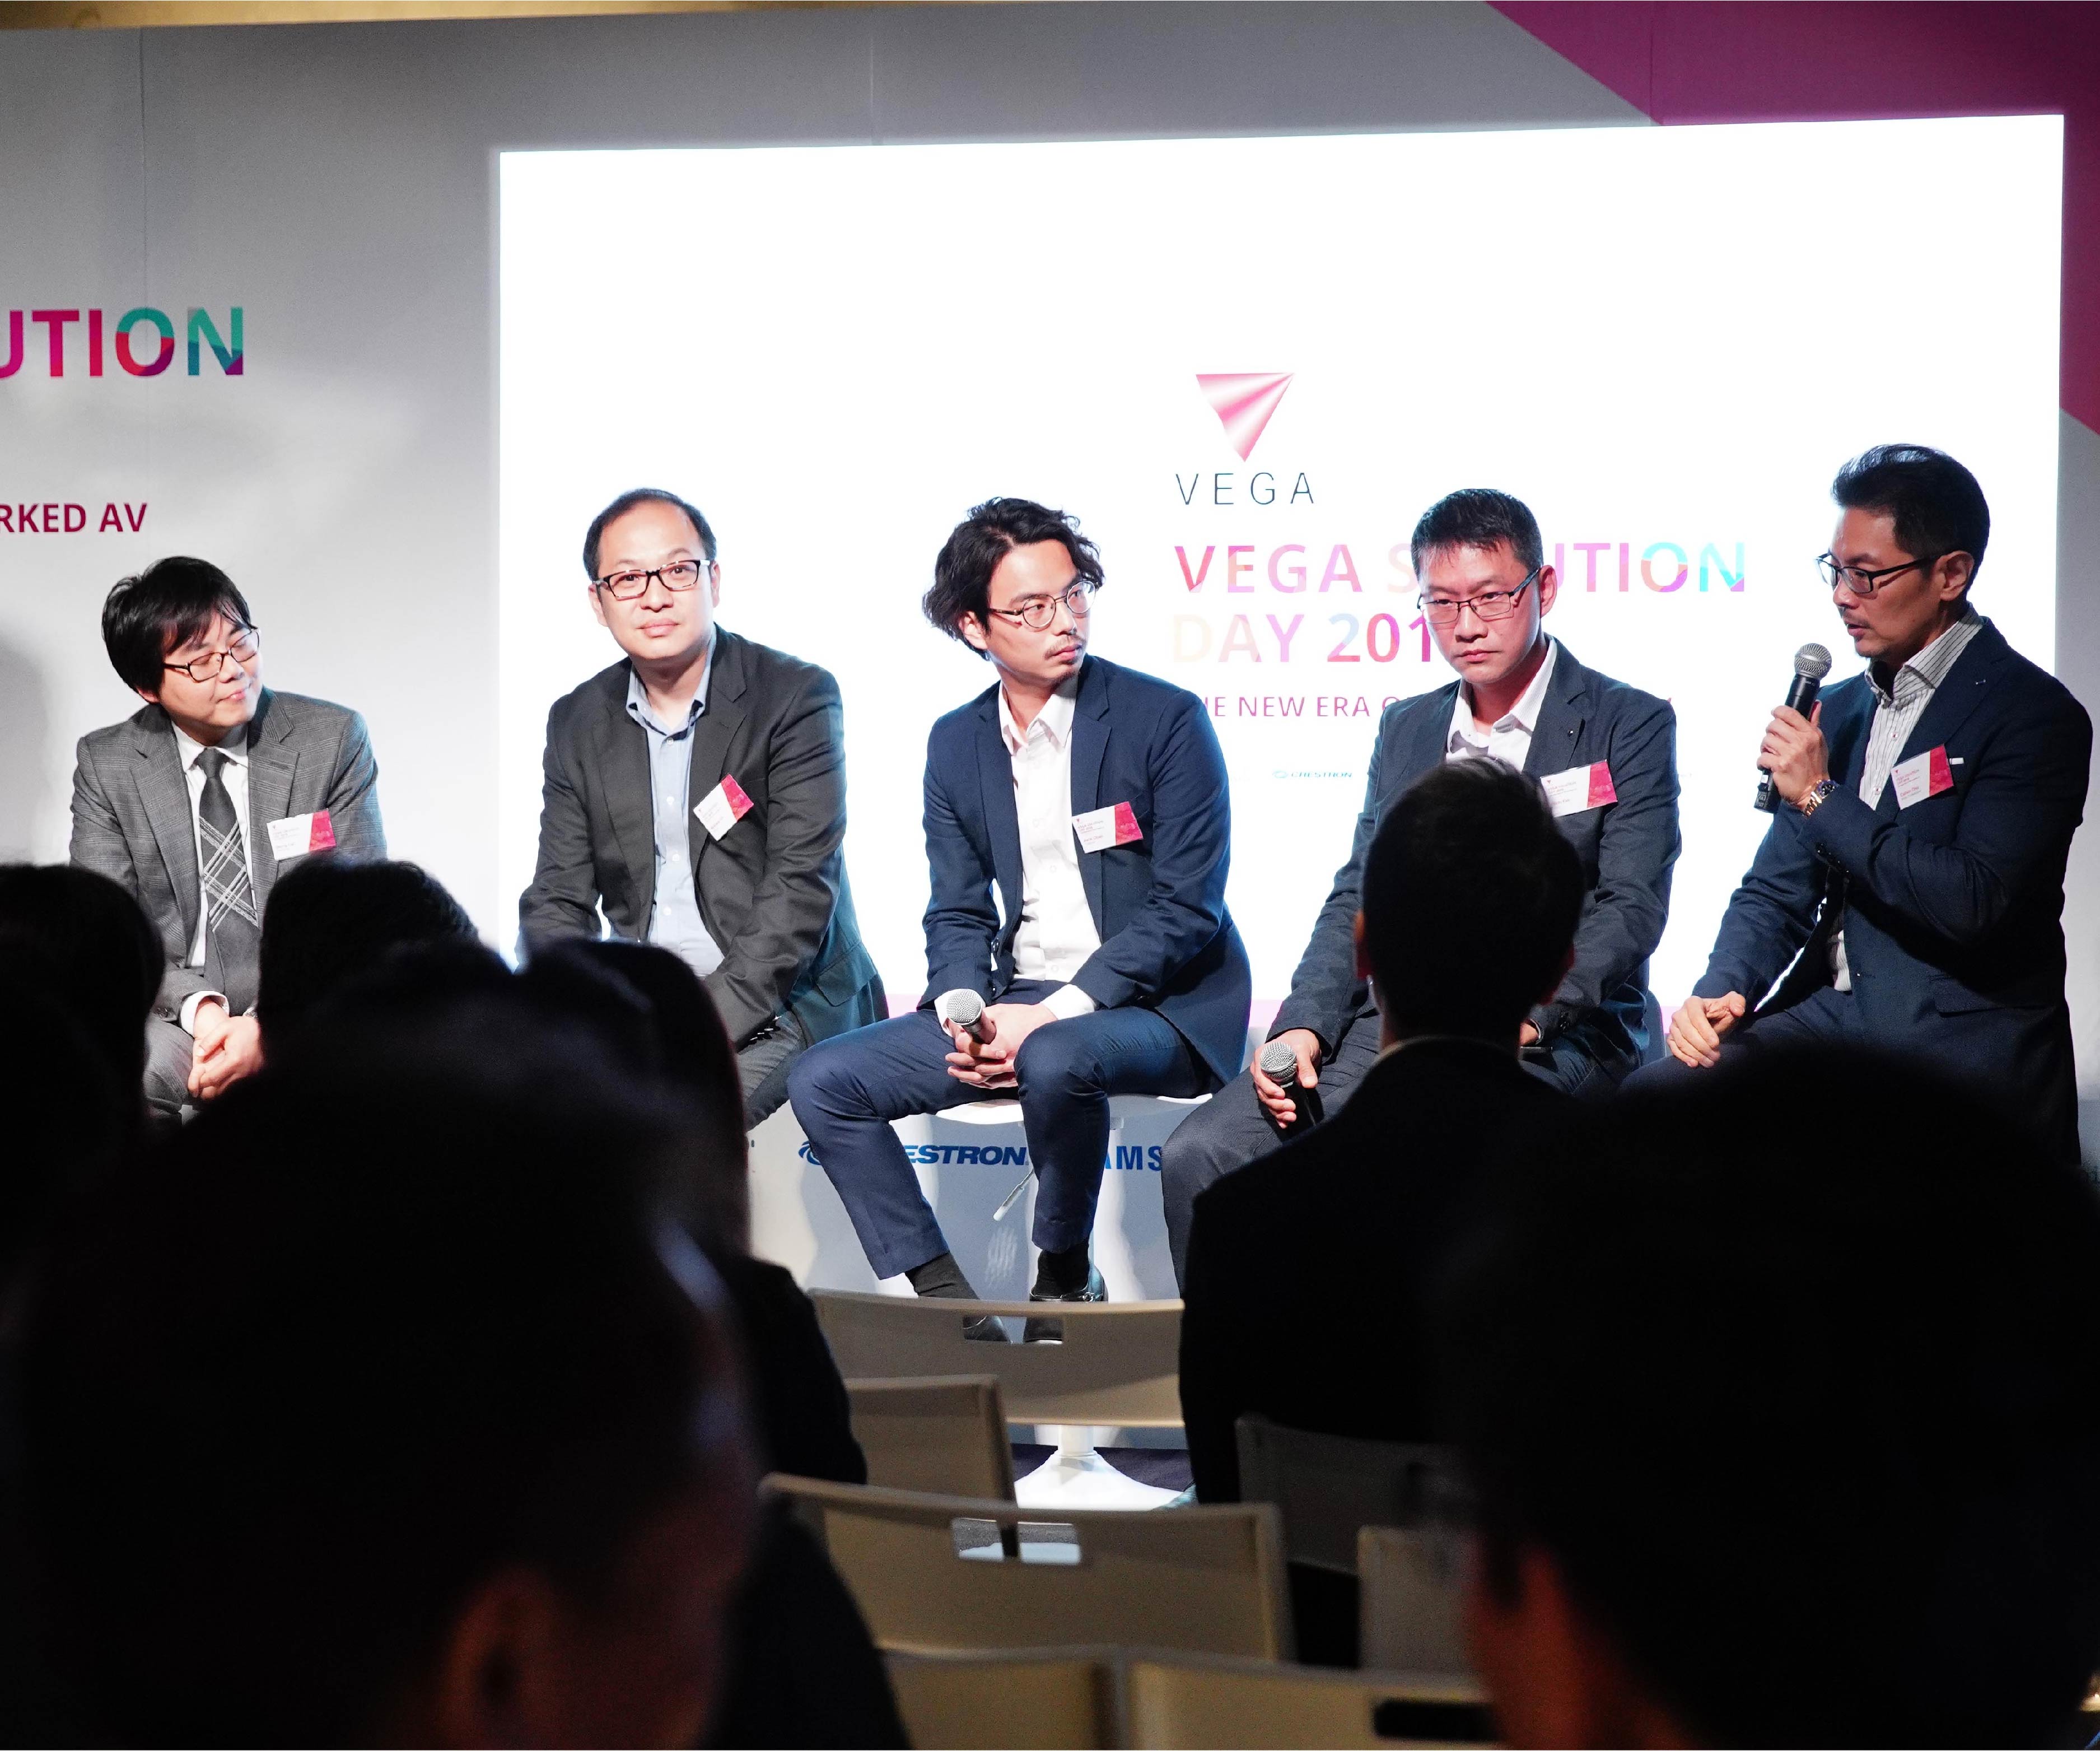 Vega Solution Day 2019: The New Era of Networked AV